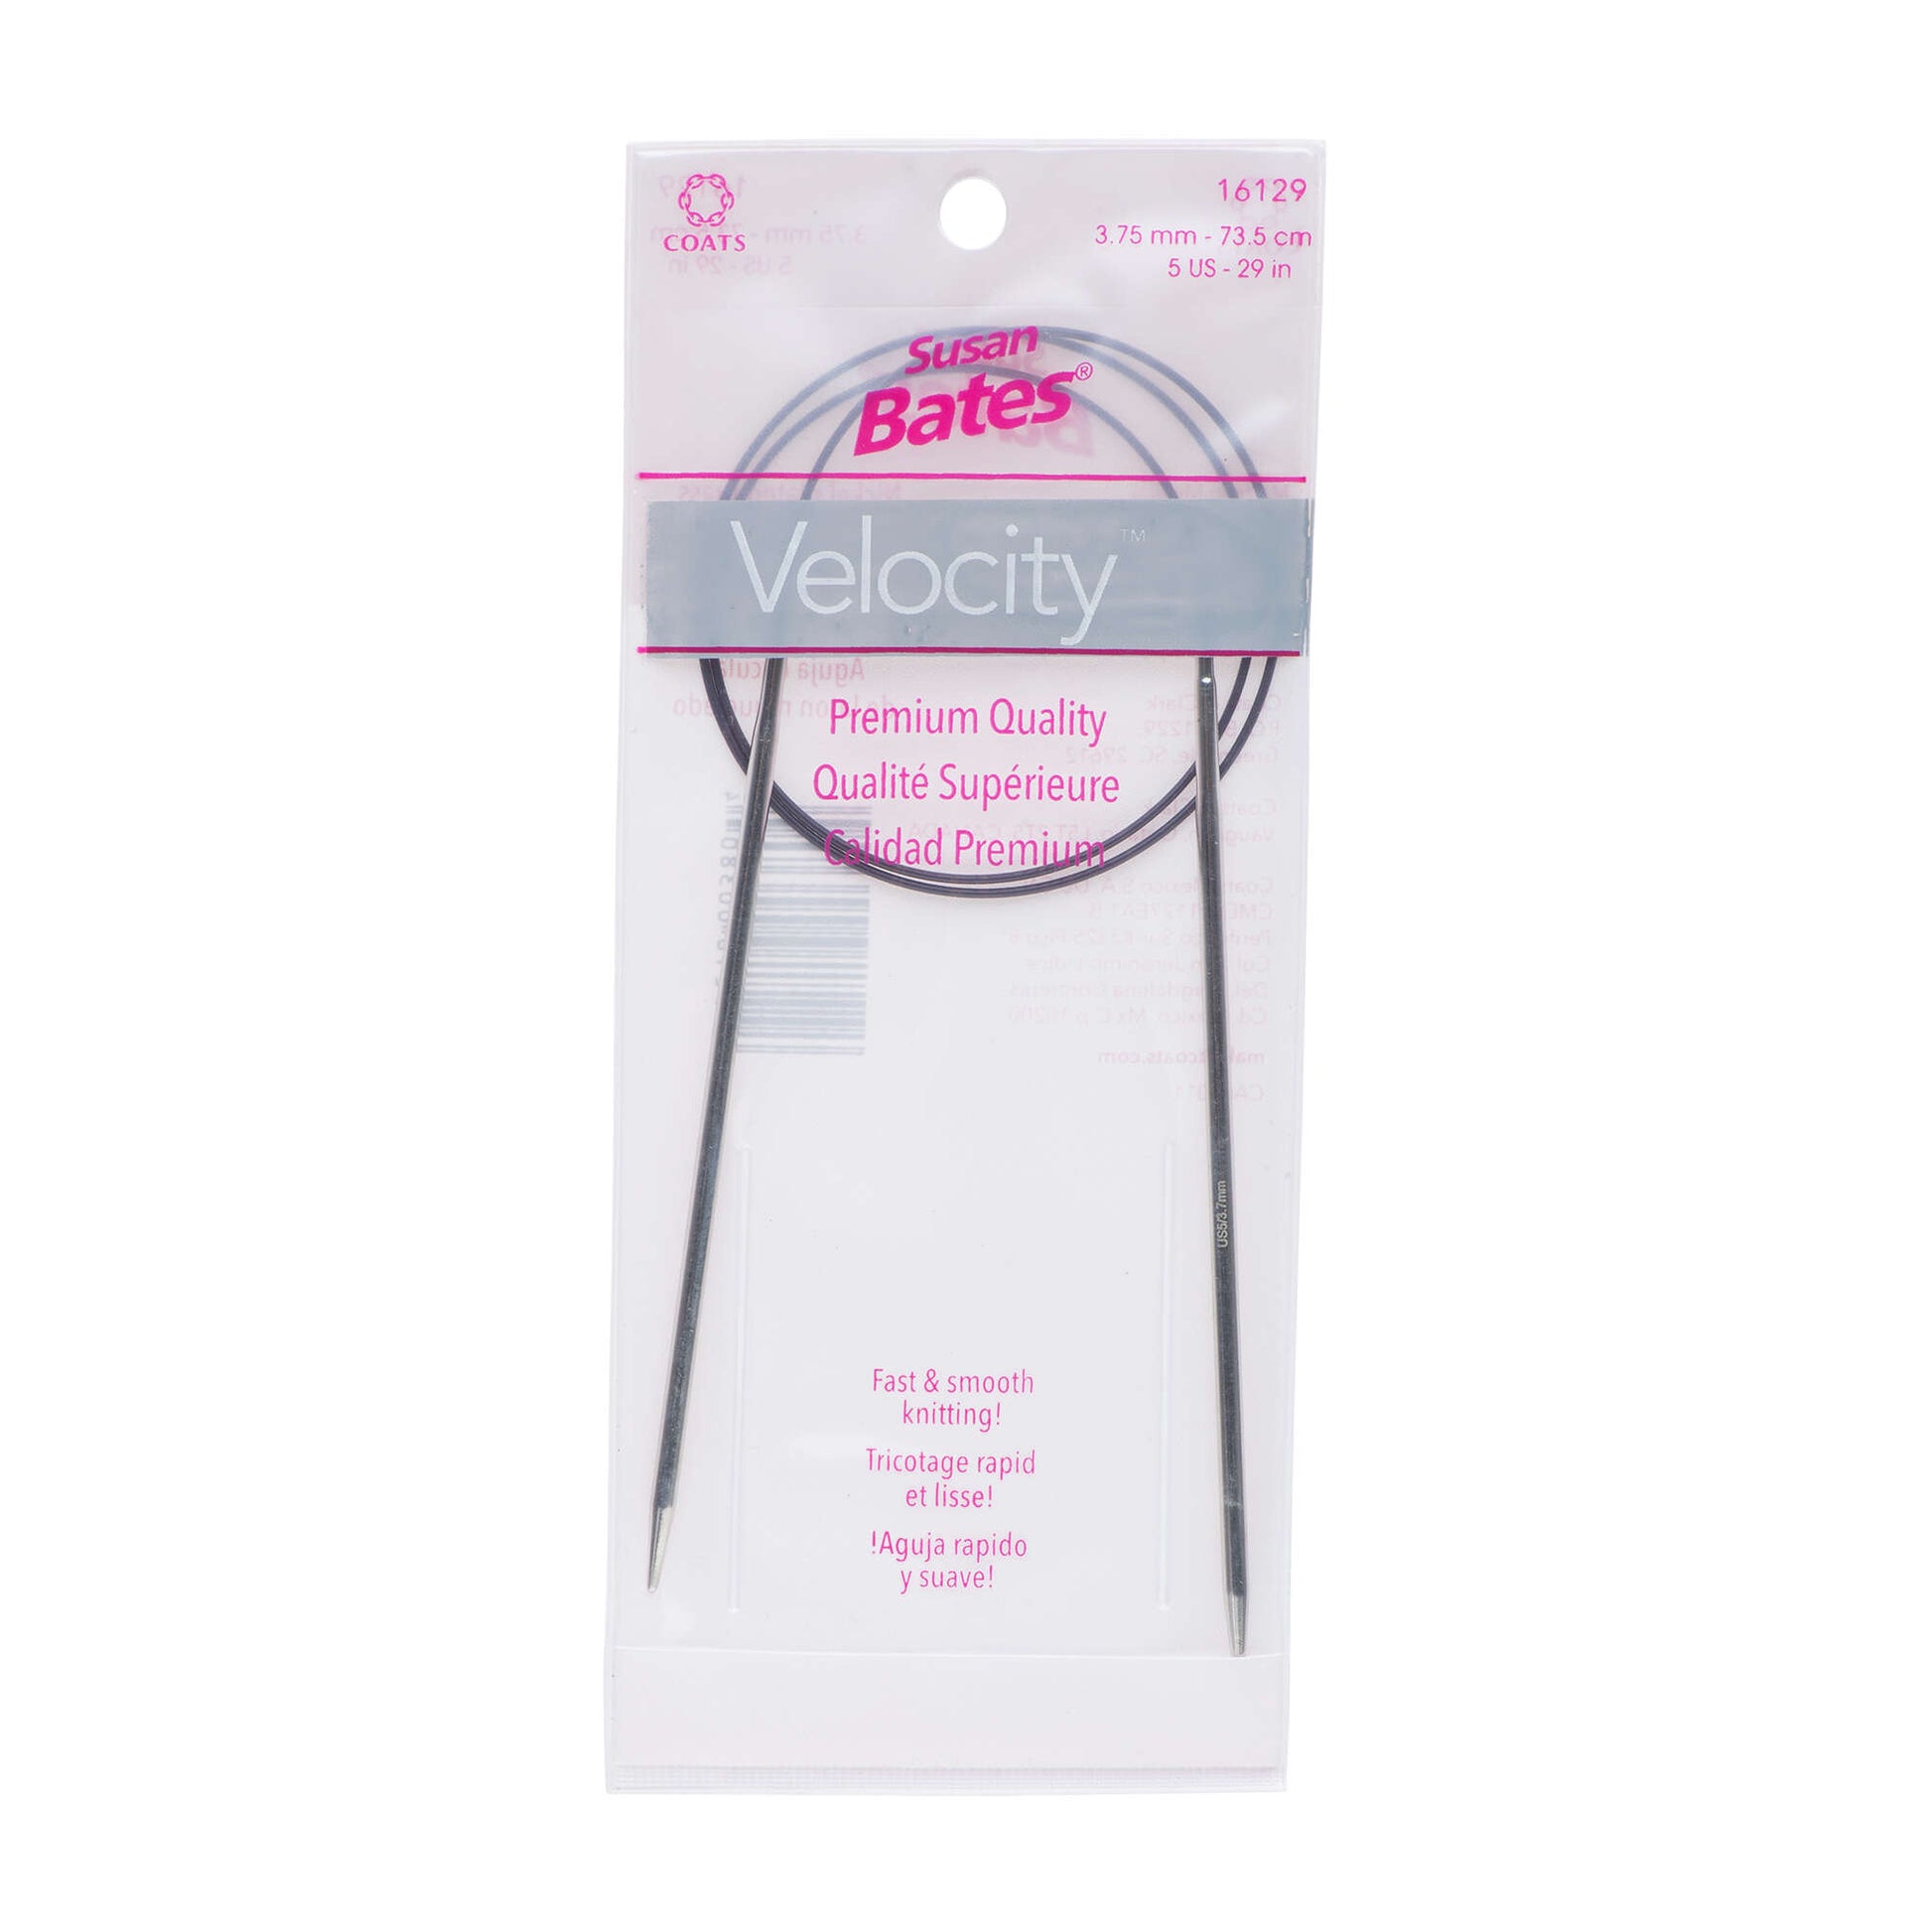 Susan Bates Velocity 29" Circular Knitting Needles - Clearance items